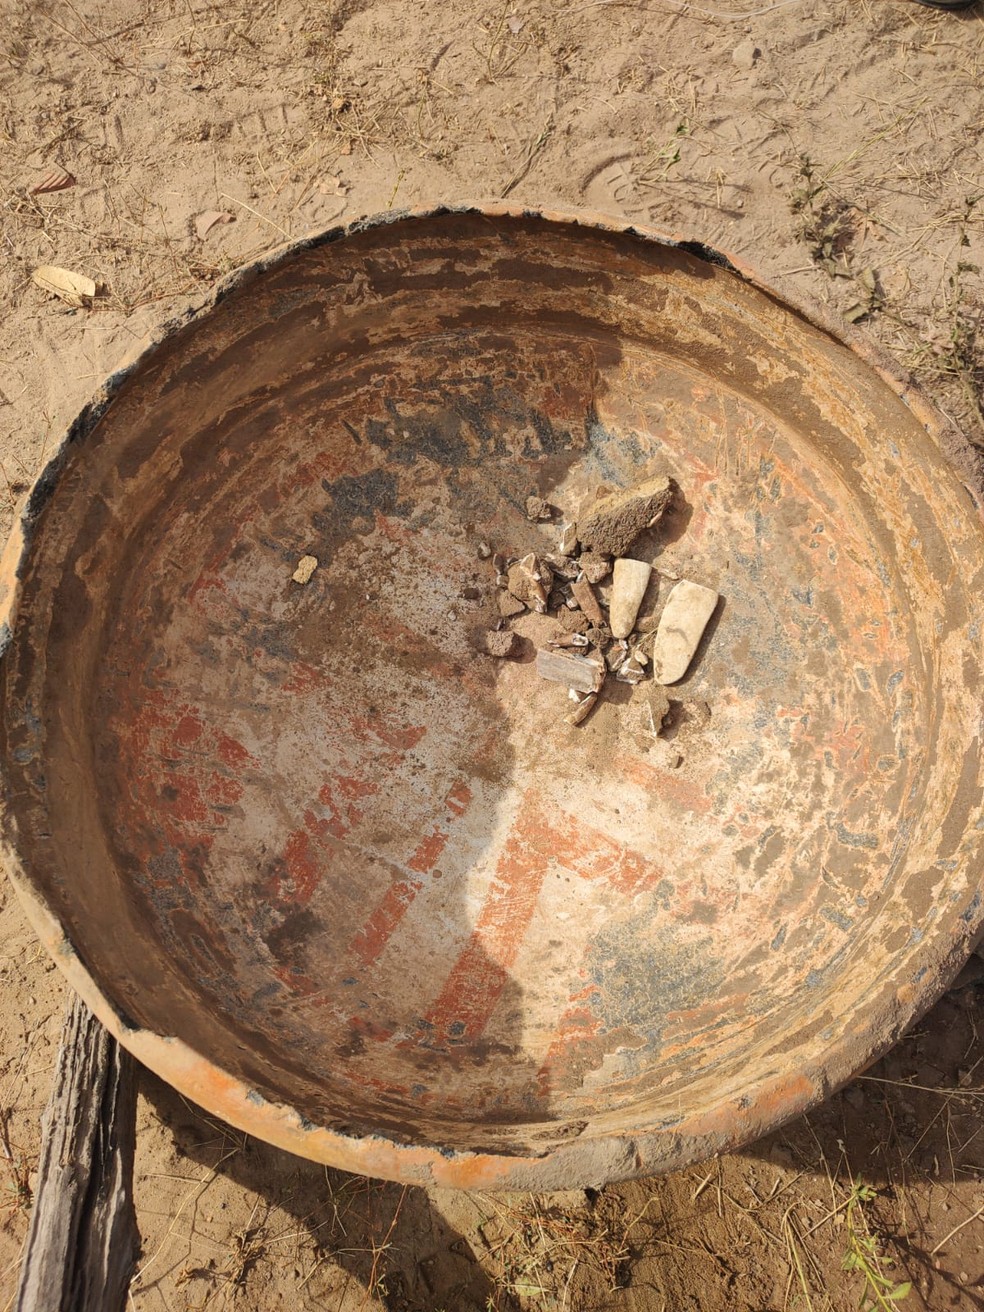 Pedreiros encontram urna funerária indígena de origem Tupi durante obra na zona rural de Miguel Alves, no Piauí — Foto: Reprodução